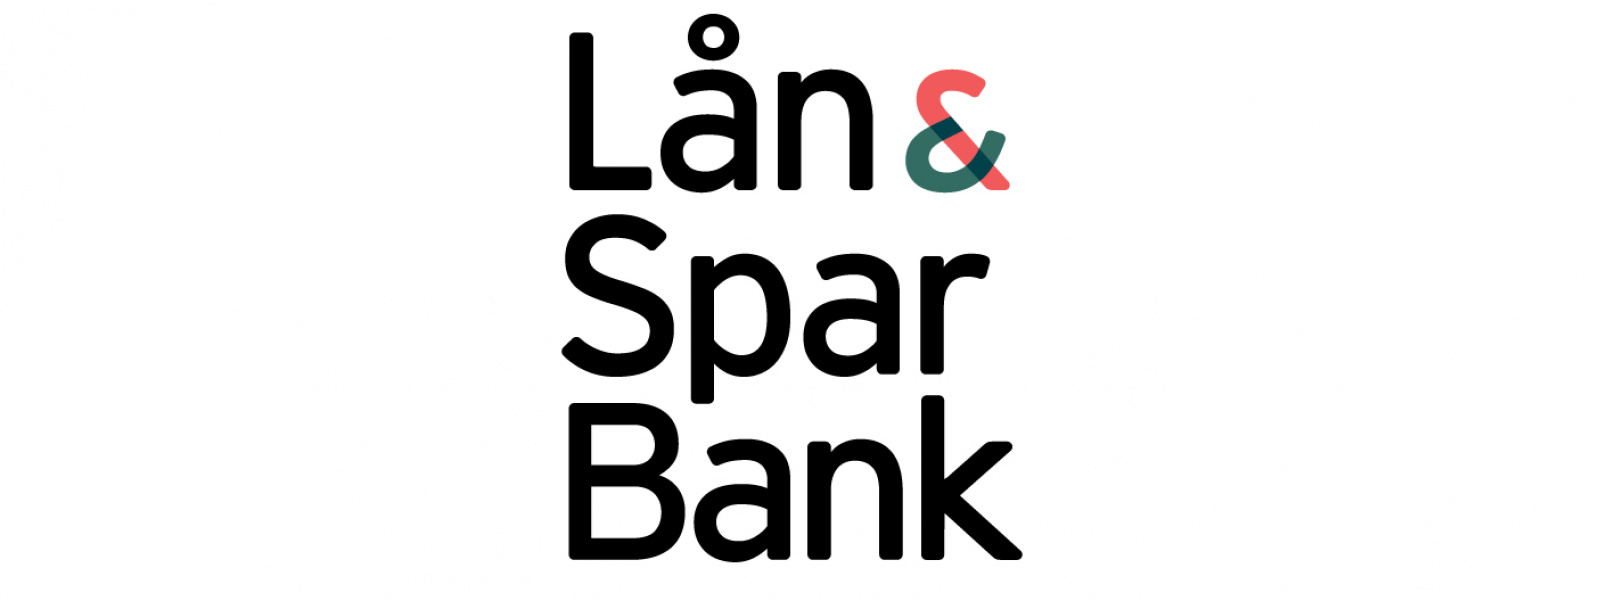 Lån & Spar Bank ny logga